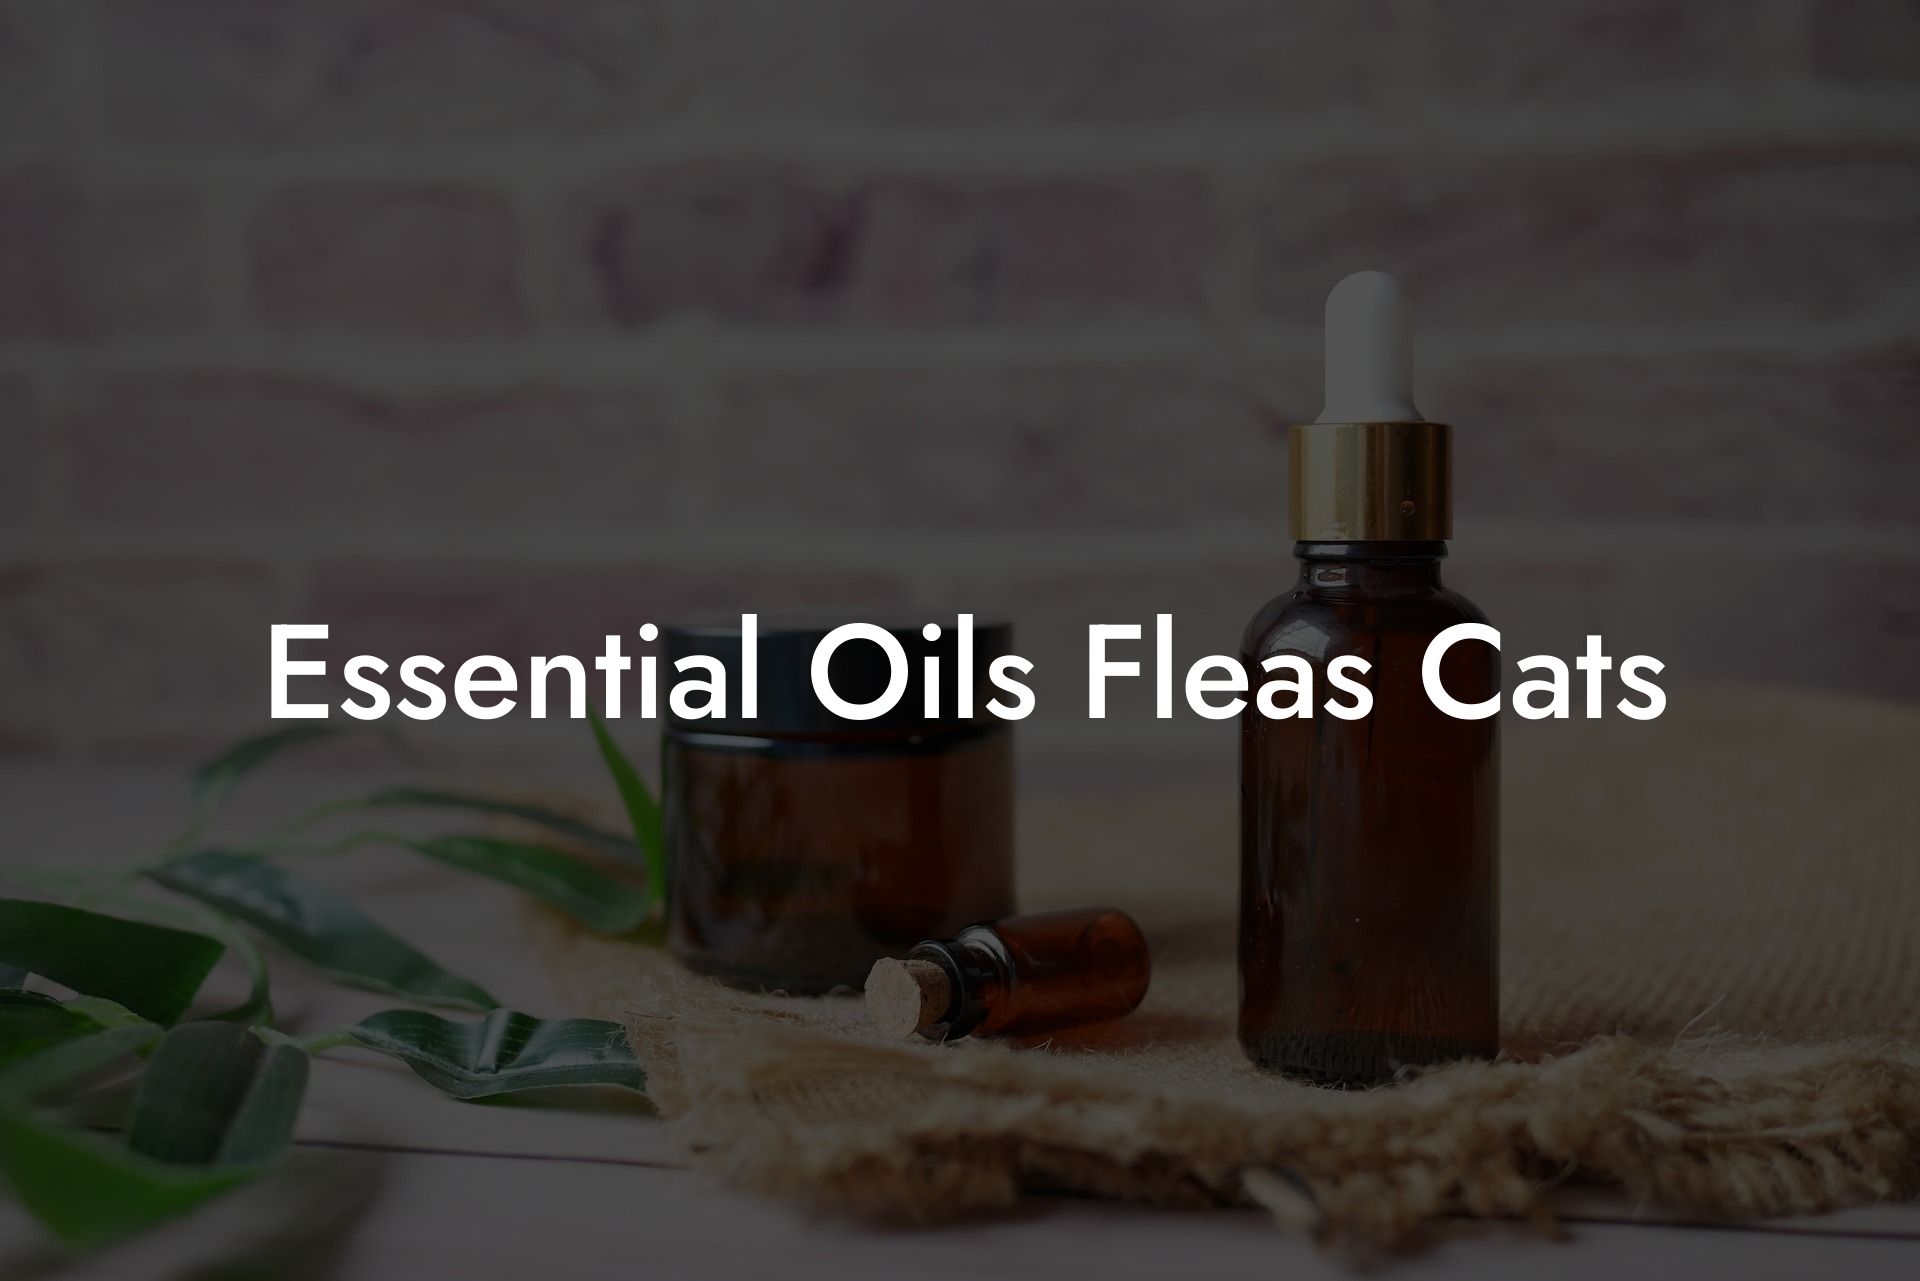 Essential Oils Fleas Cats